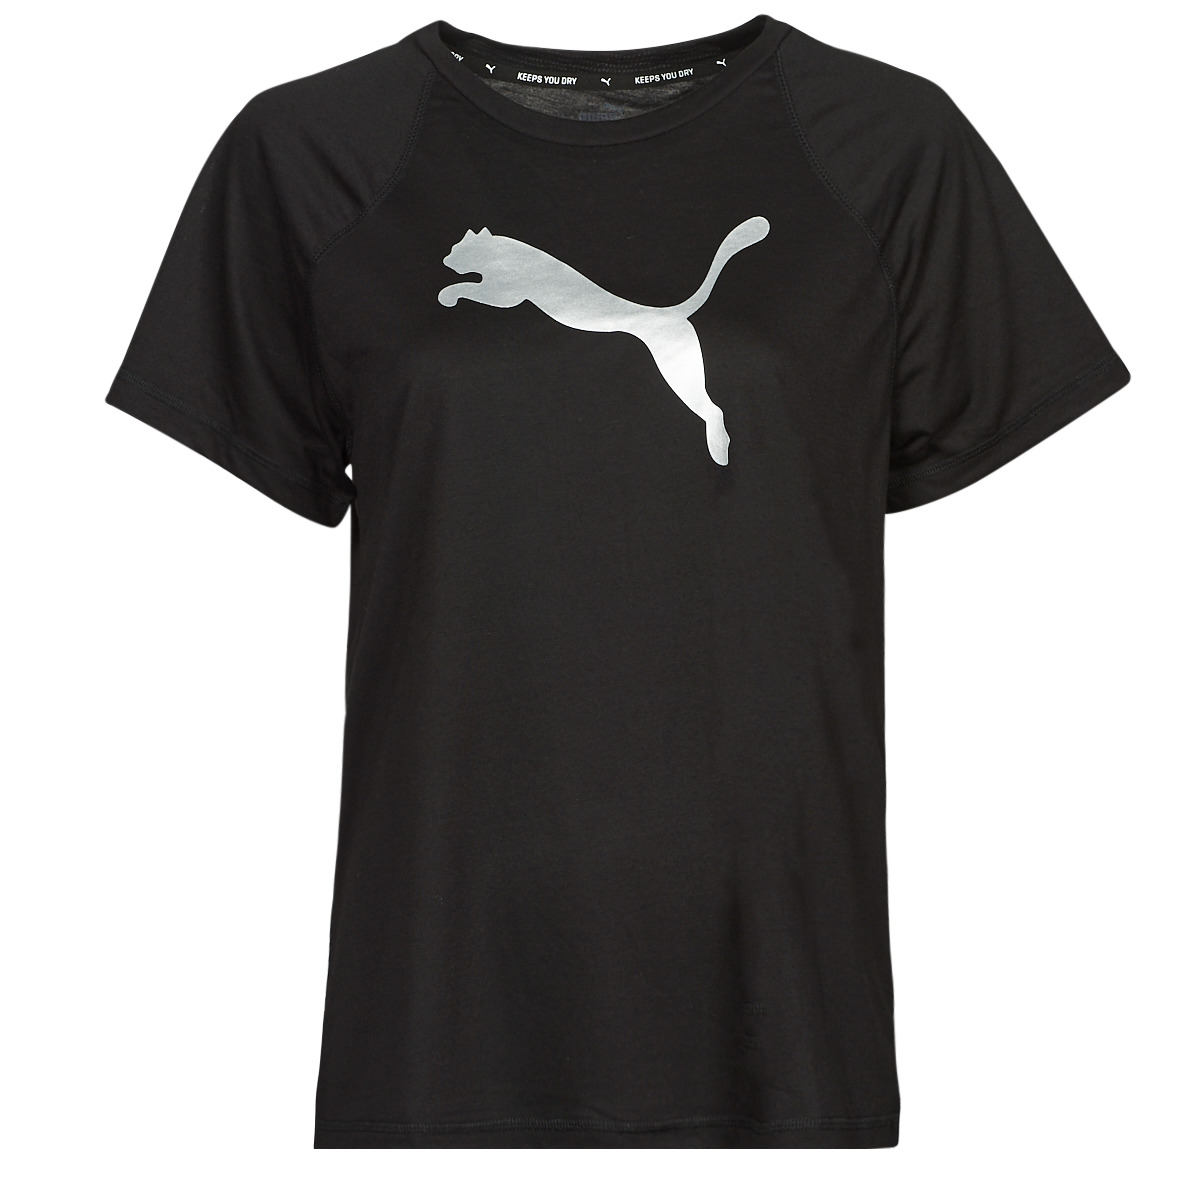 Abbigliamento Donna T-shirt maniche corte Puma EVOSTRIPE TEE 